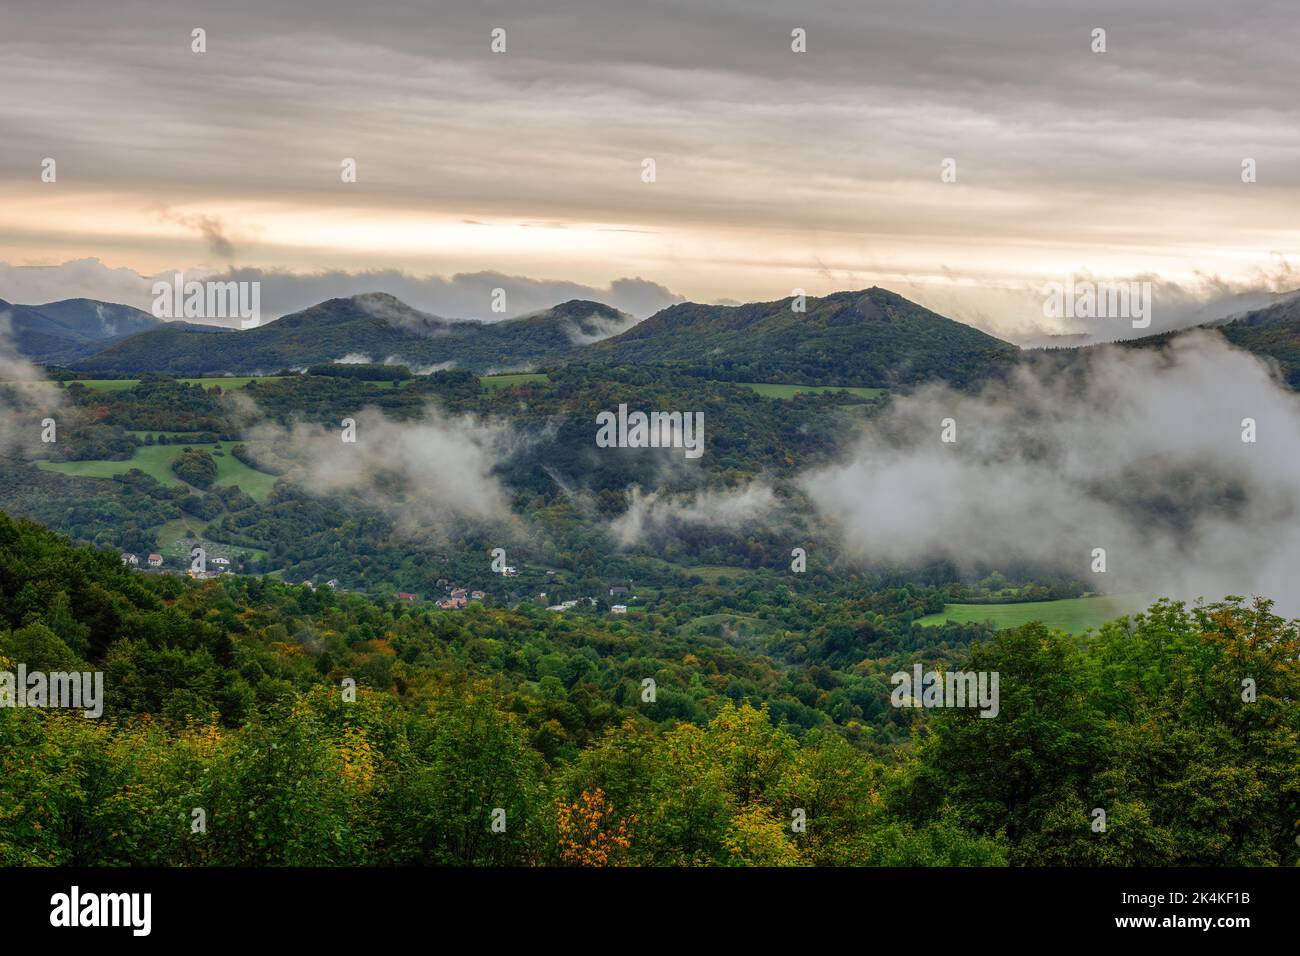 Nebel rollt ins Tal, herbstliche Berglandschaft mit Wald. Am frühen Morgen. Blick von oben. Natur Europas, Land. Slowakei Stockfoto